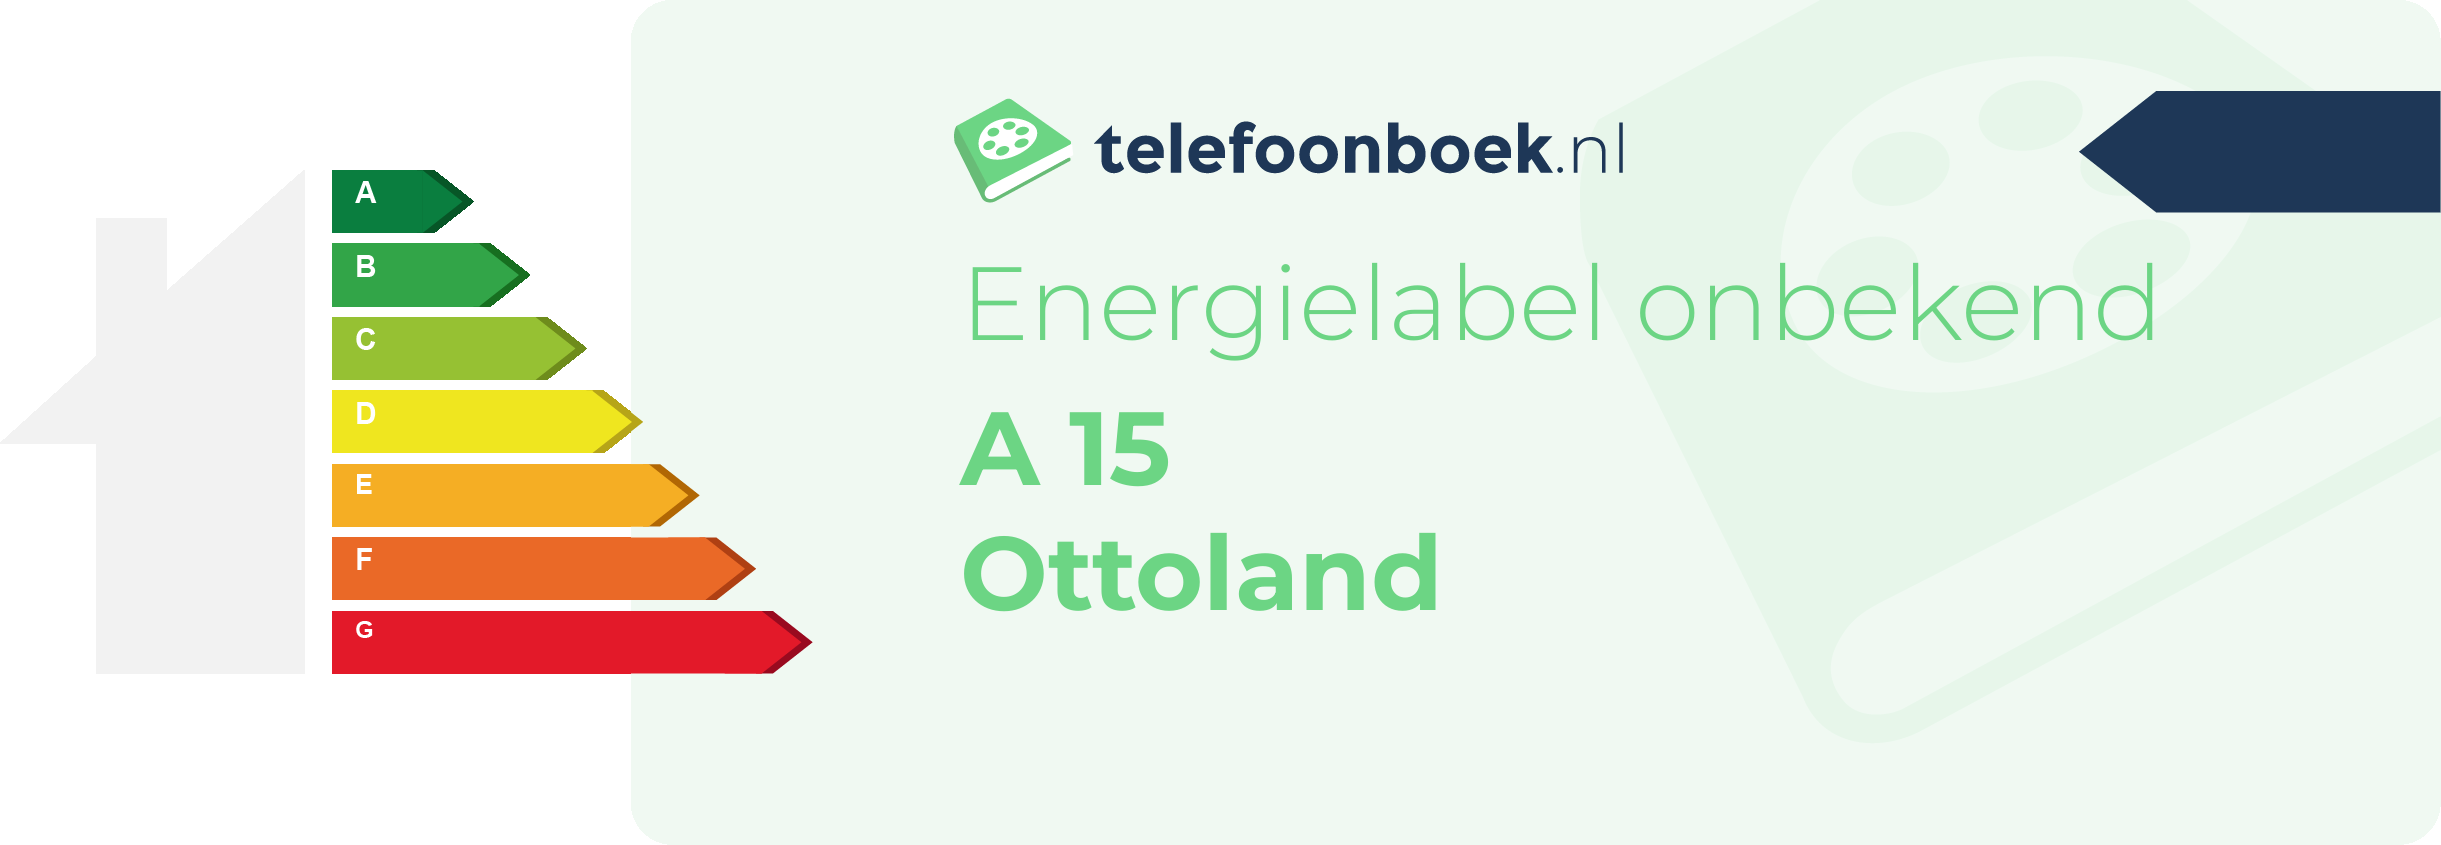 Energielabel A 15 Ottoland